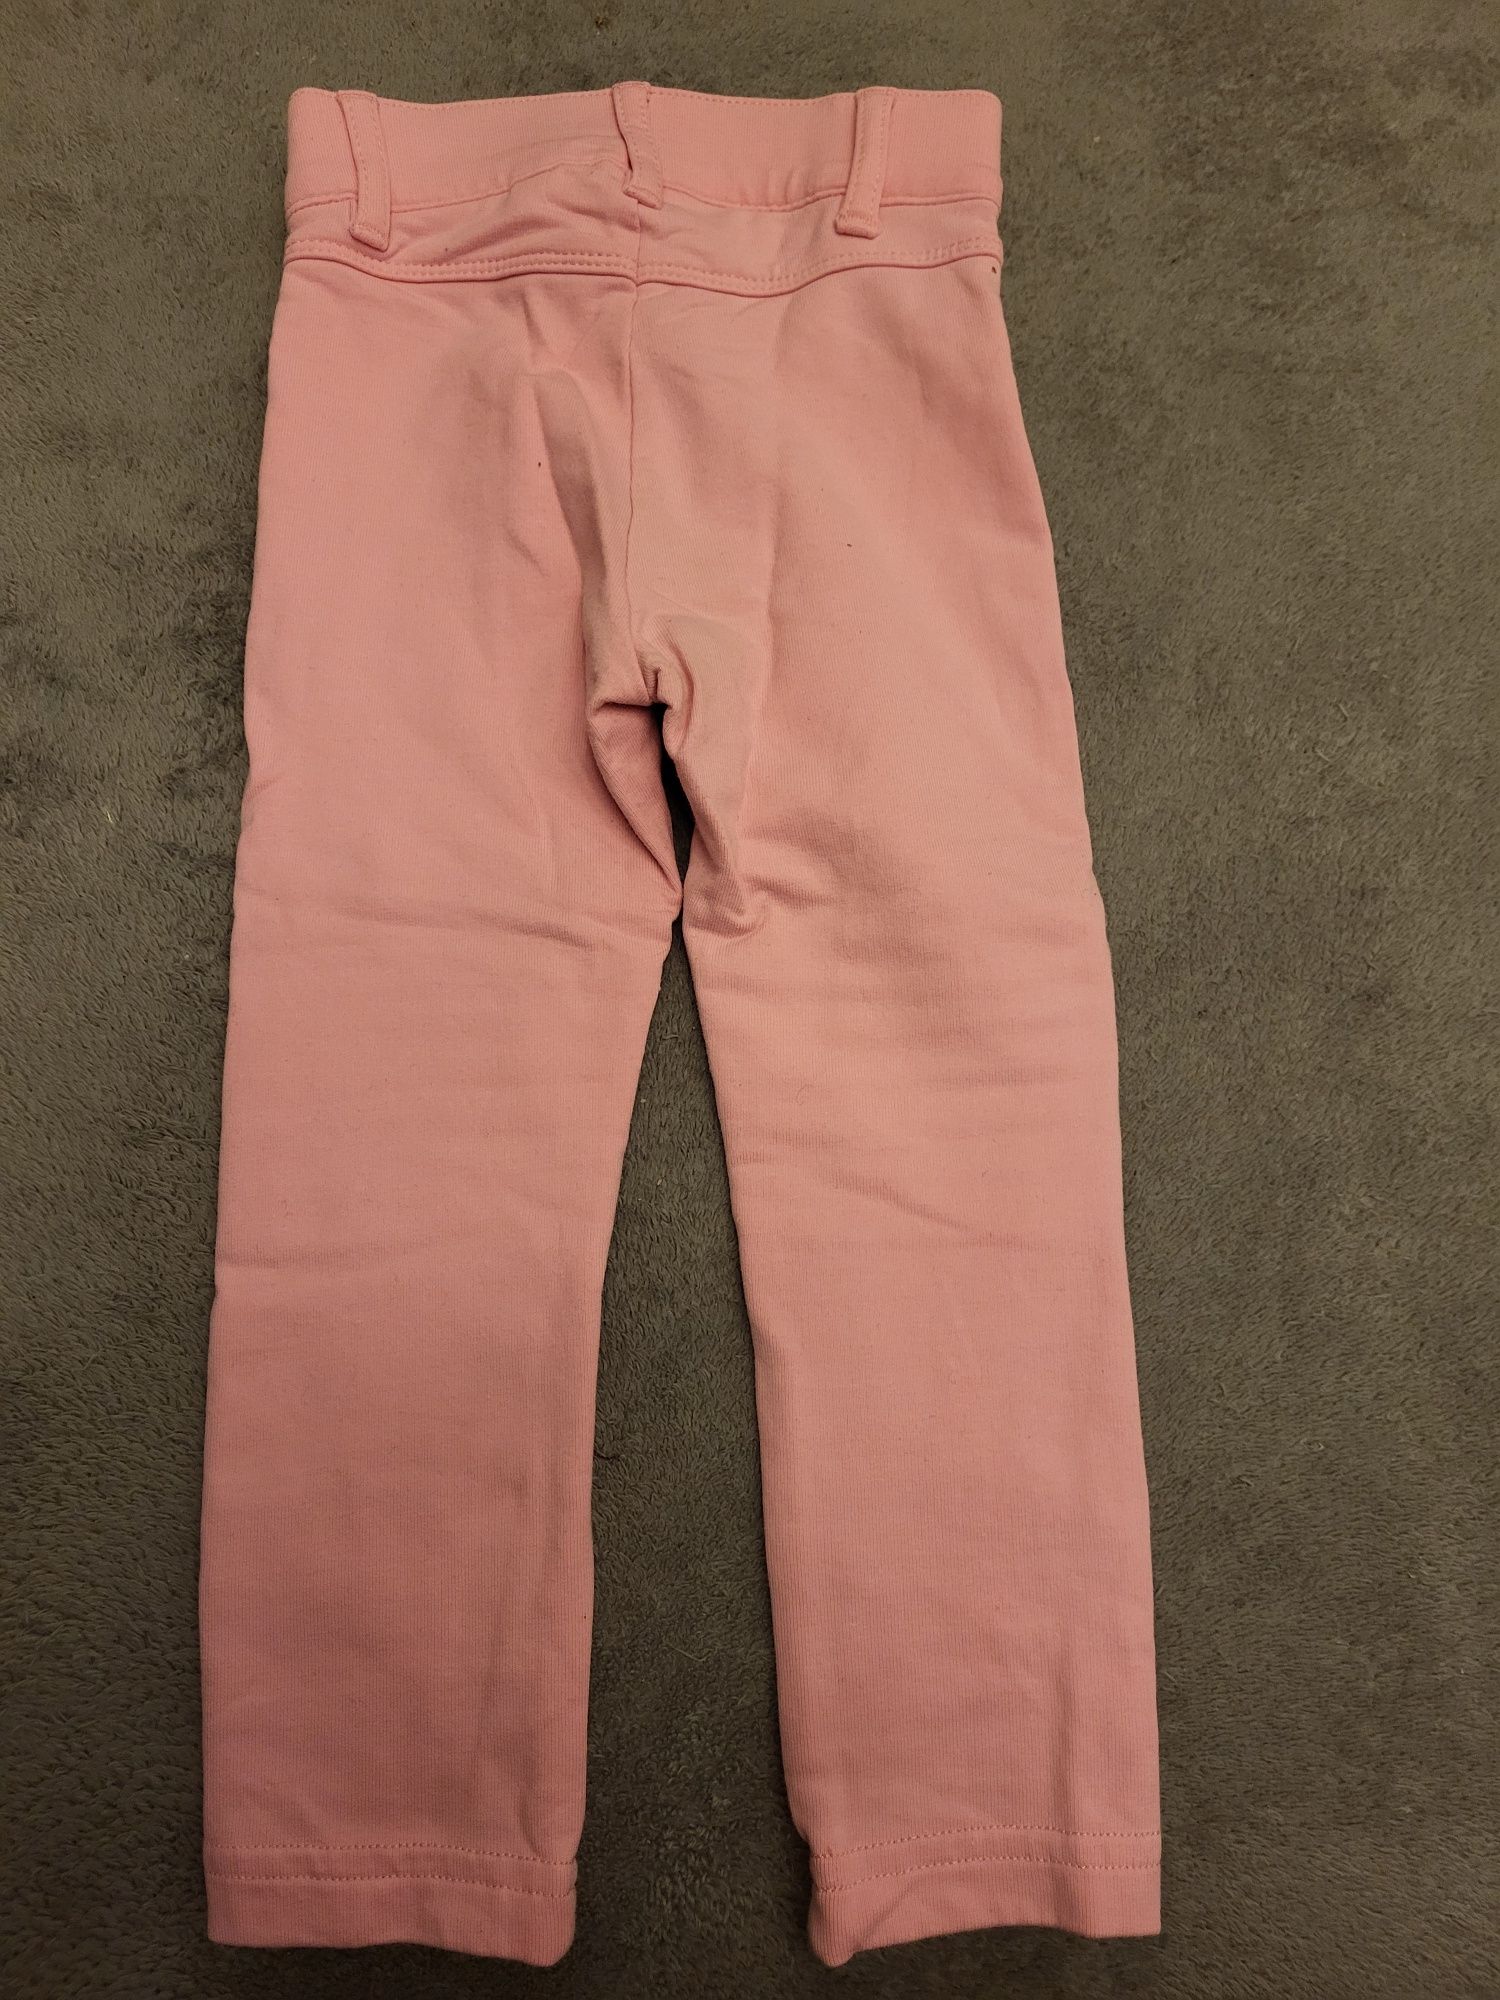 Spodnie dziewczęce różowe rozmiar 86